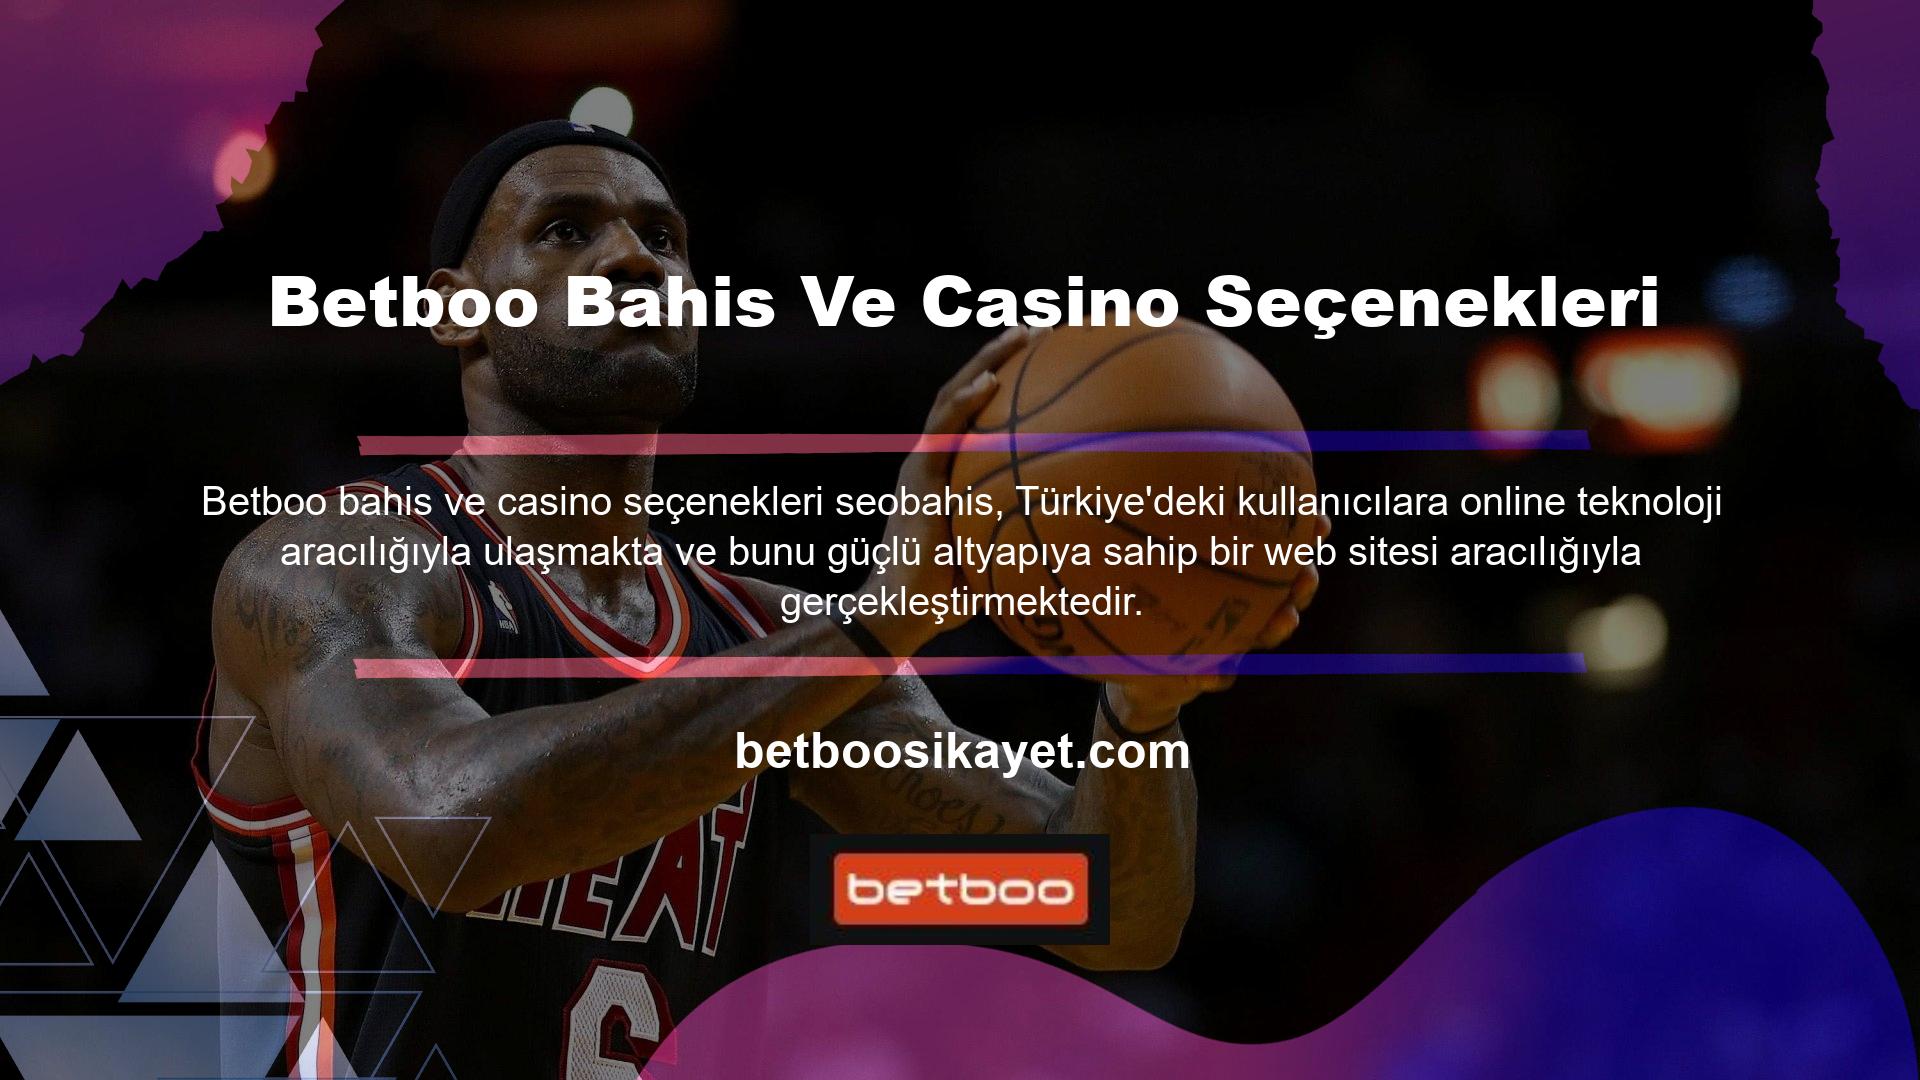 Betboo giriş adresine tıklayan tüm kullanıcılar Betboo bahis sitesinde sunulan bahislerden ve casino oyunlarından yararlanma imkanına sahiptir